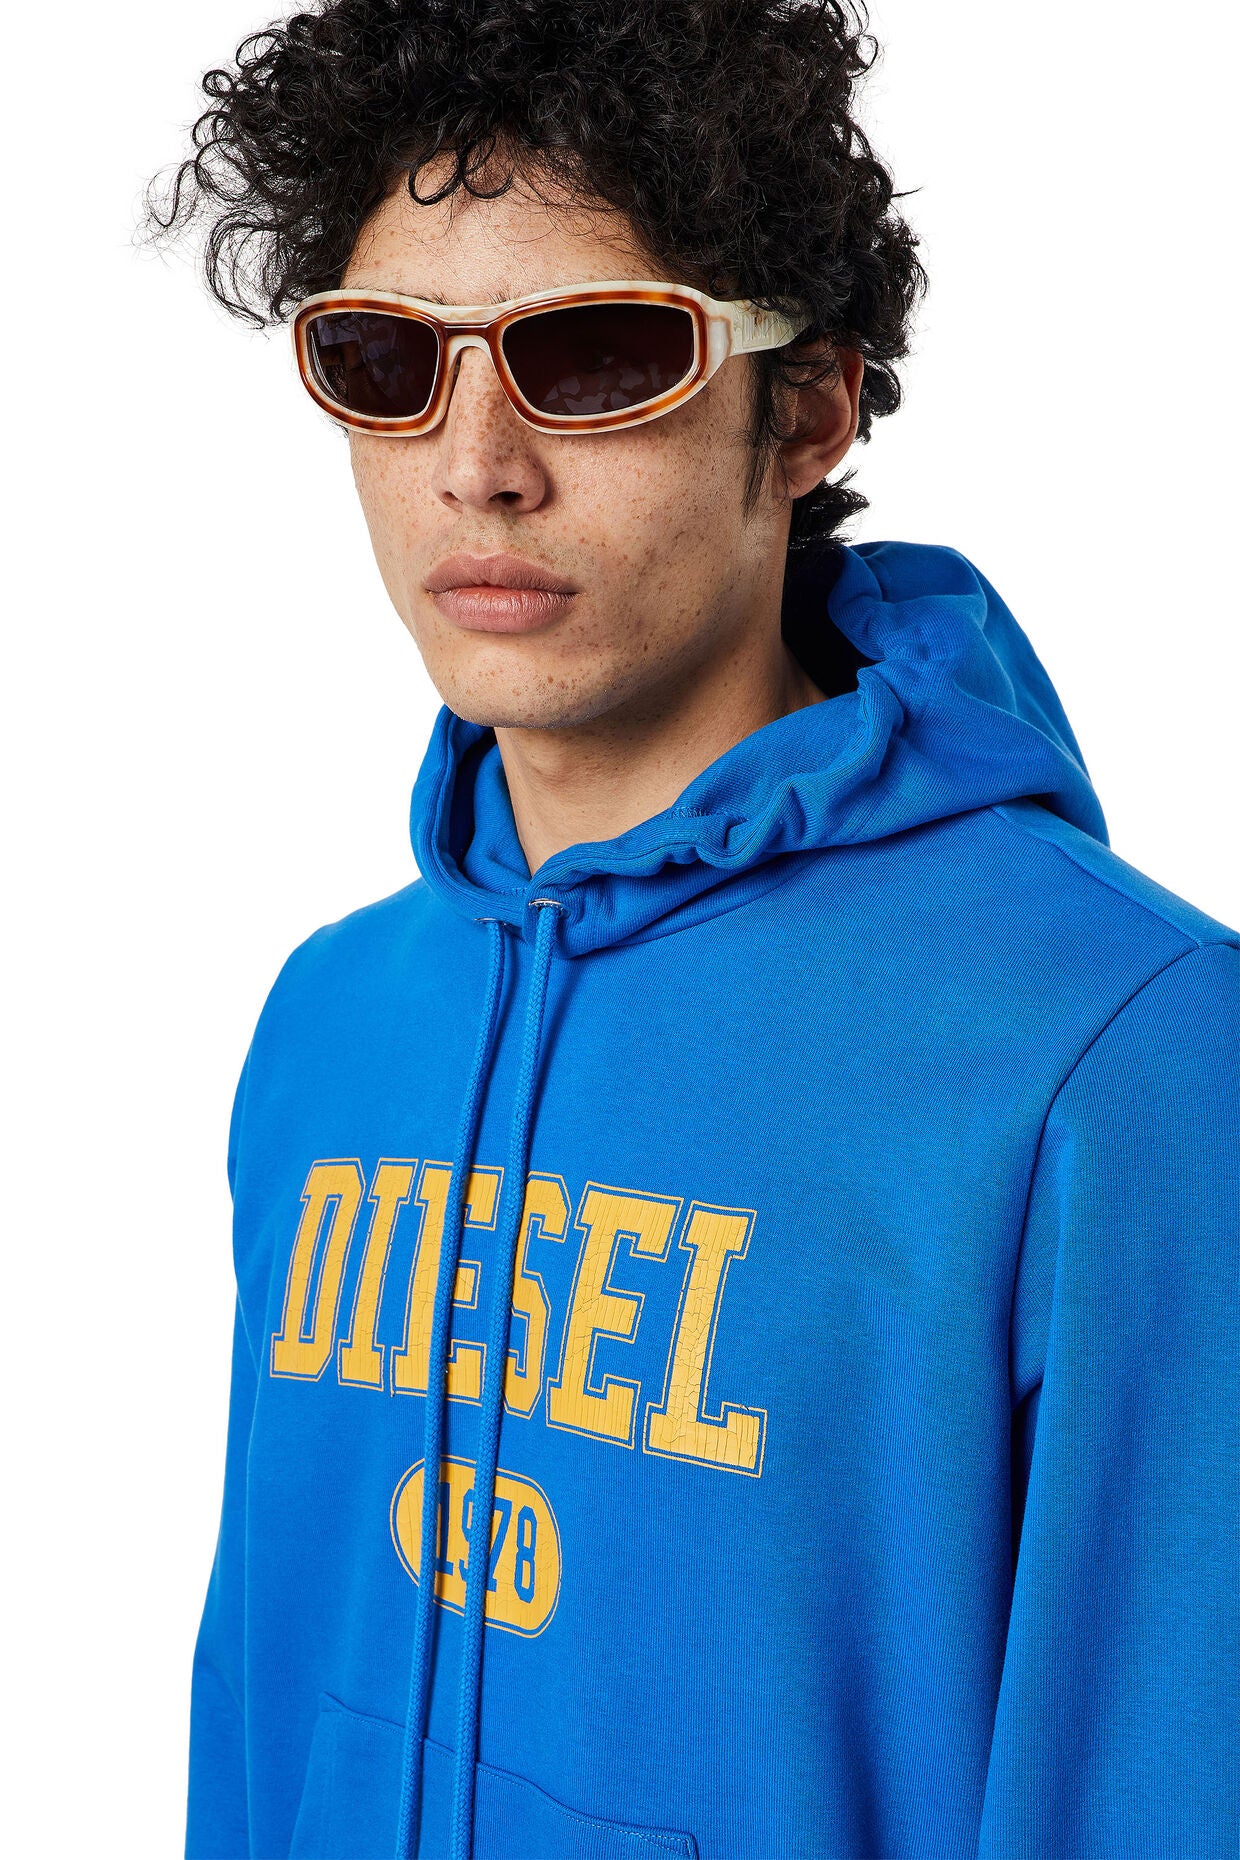 Diesel - S-Ginn Hood K25 Sweatshirt - Blue